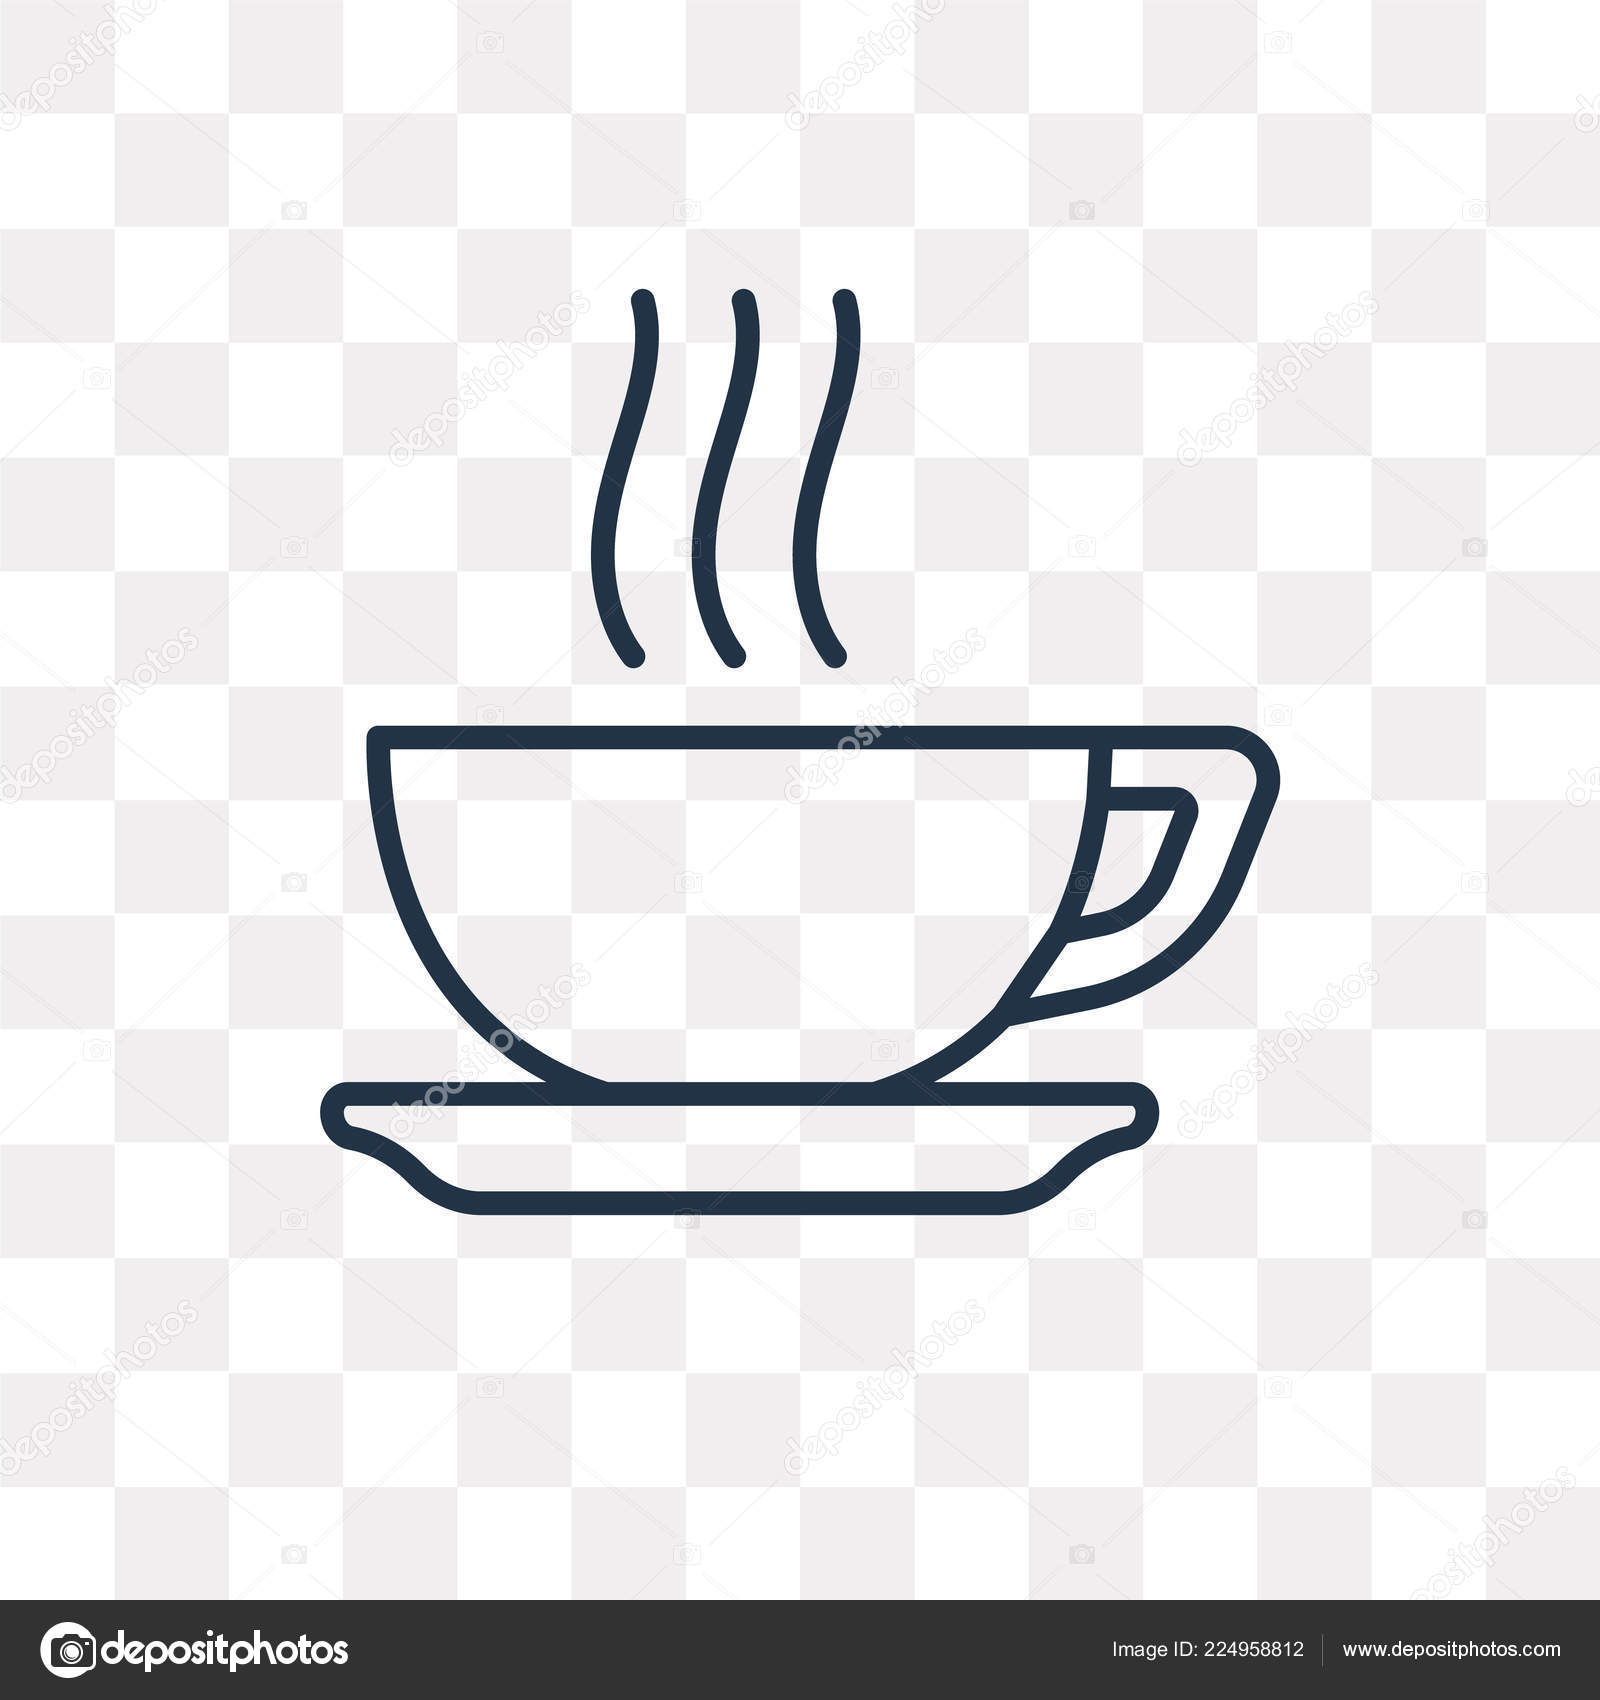 Transparent Coffee Cup Clipart - แก้ว กาแฟ ภาพ วาด, HD Png